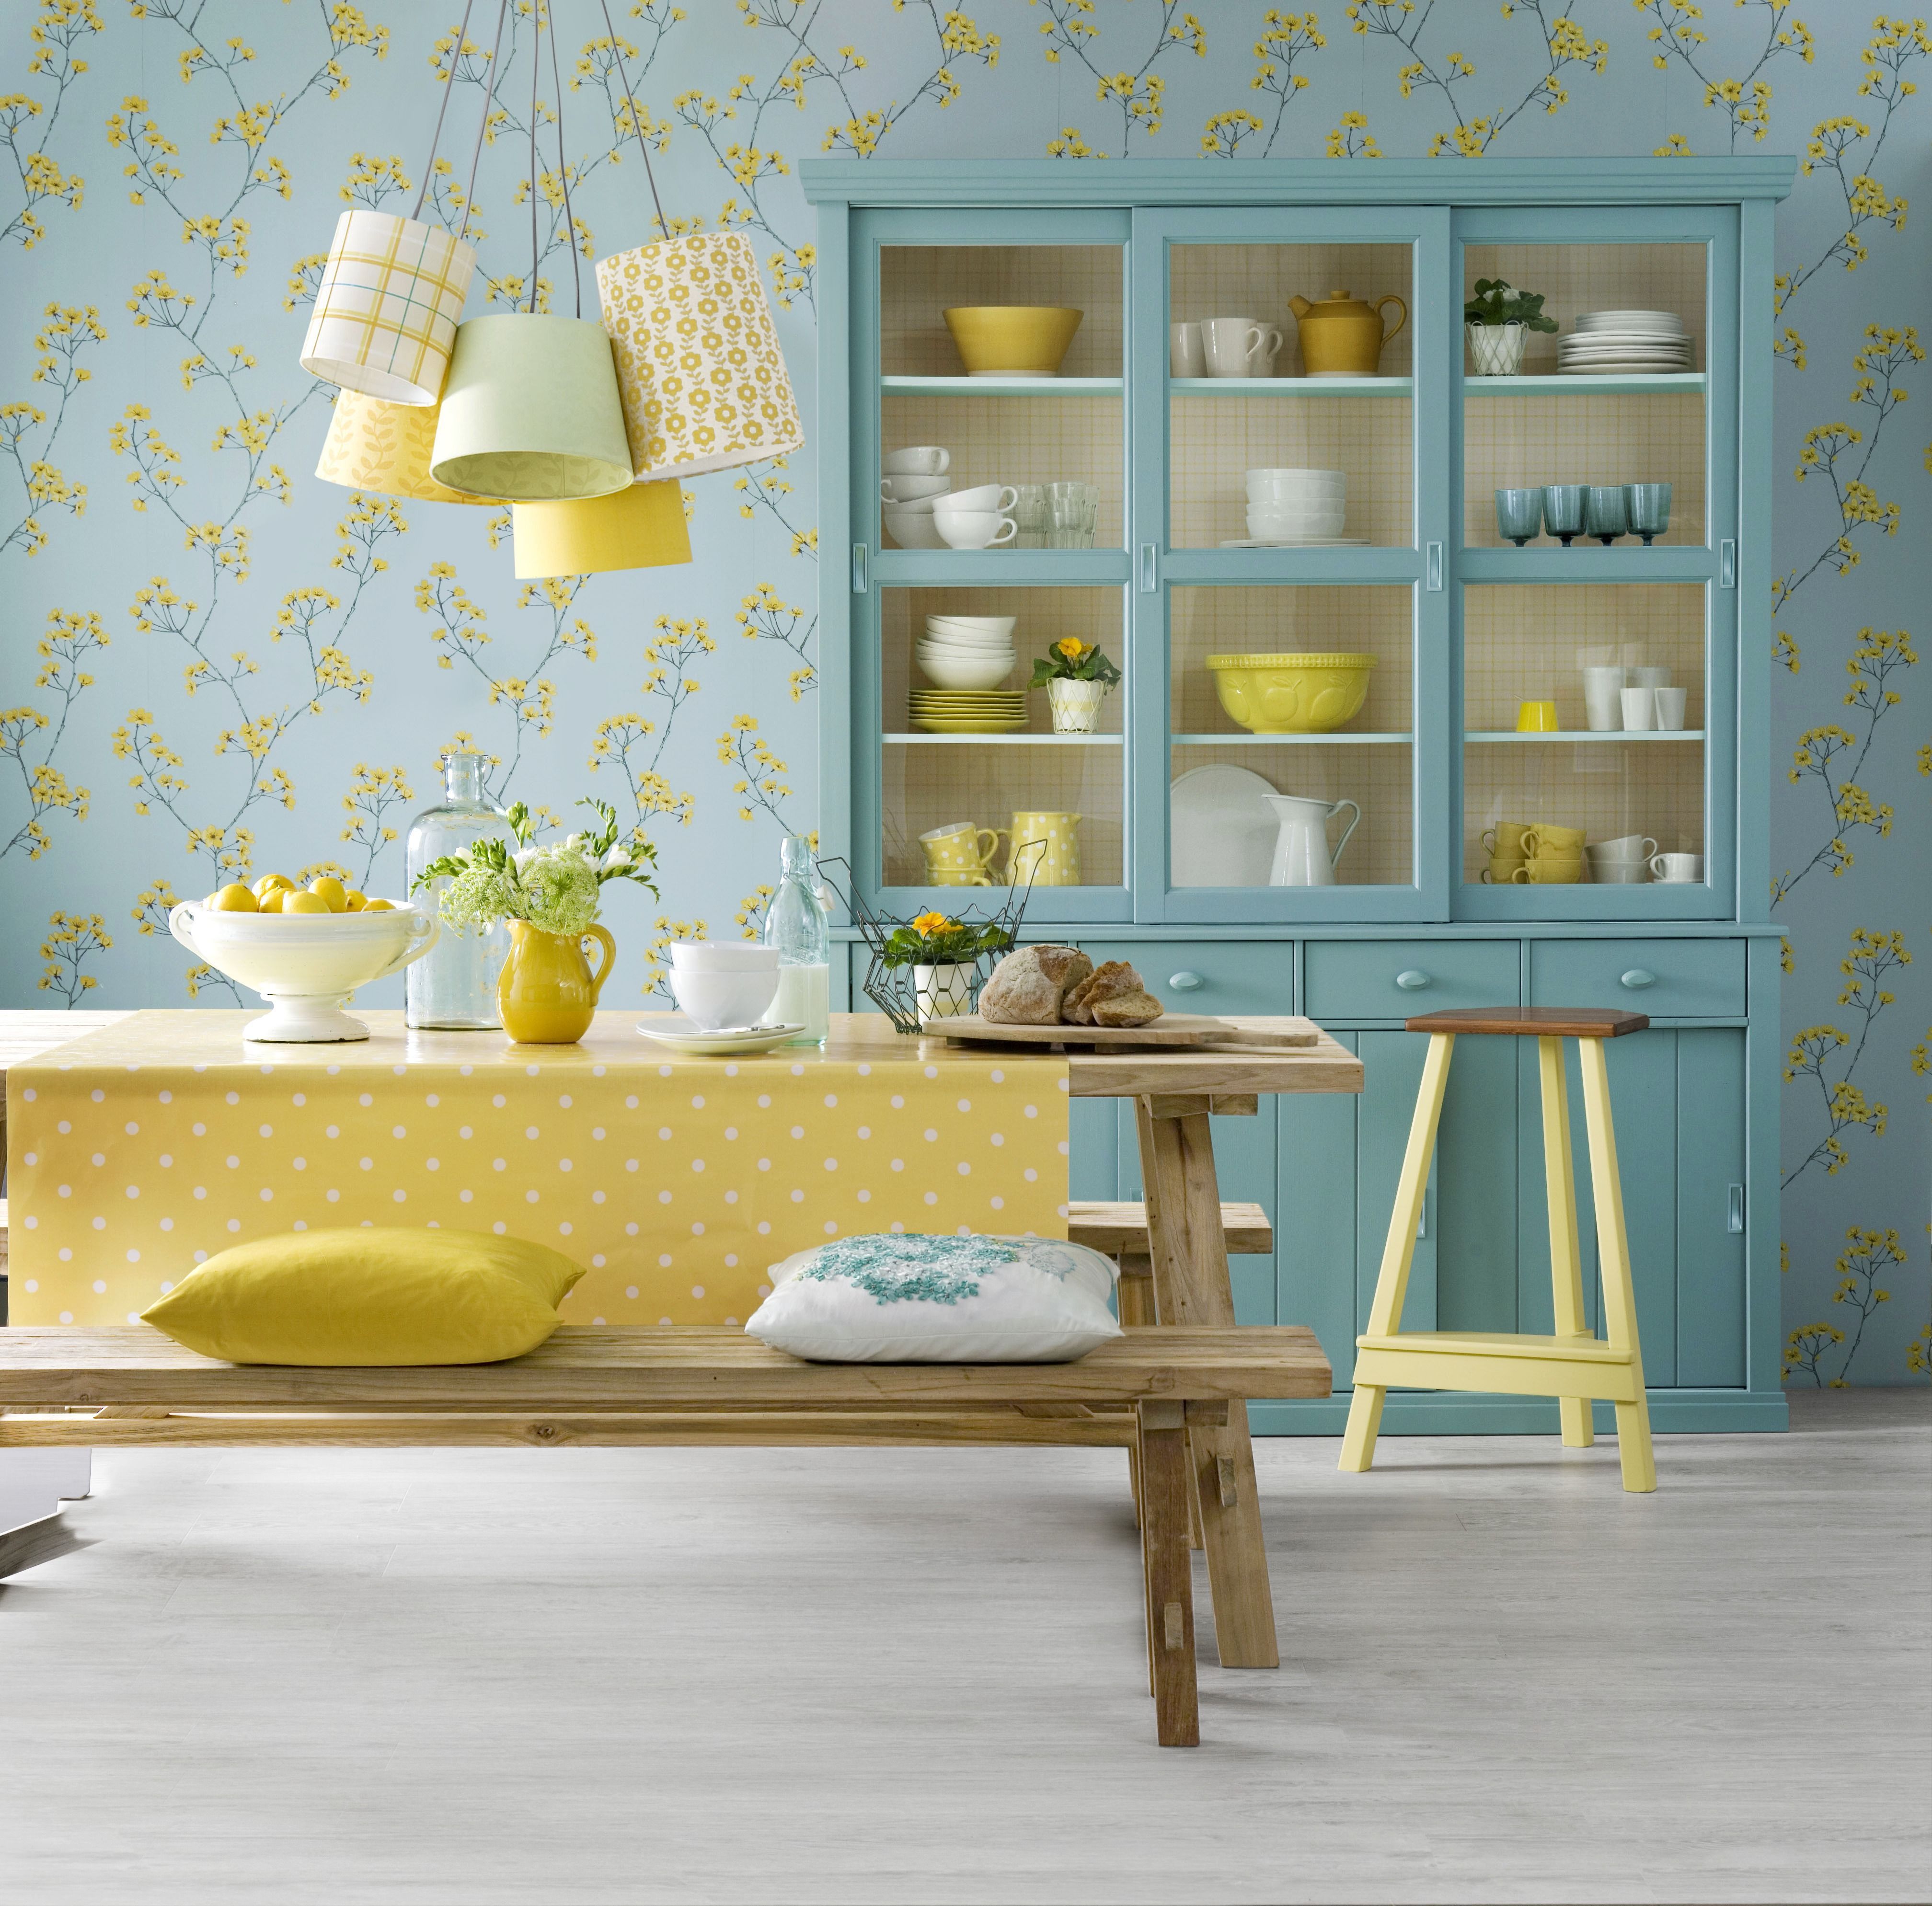  عکس آشپزخانه زیبا با کمد آبی رنگ و پوستر زرد رنگ قشنگ 